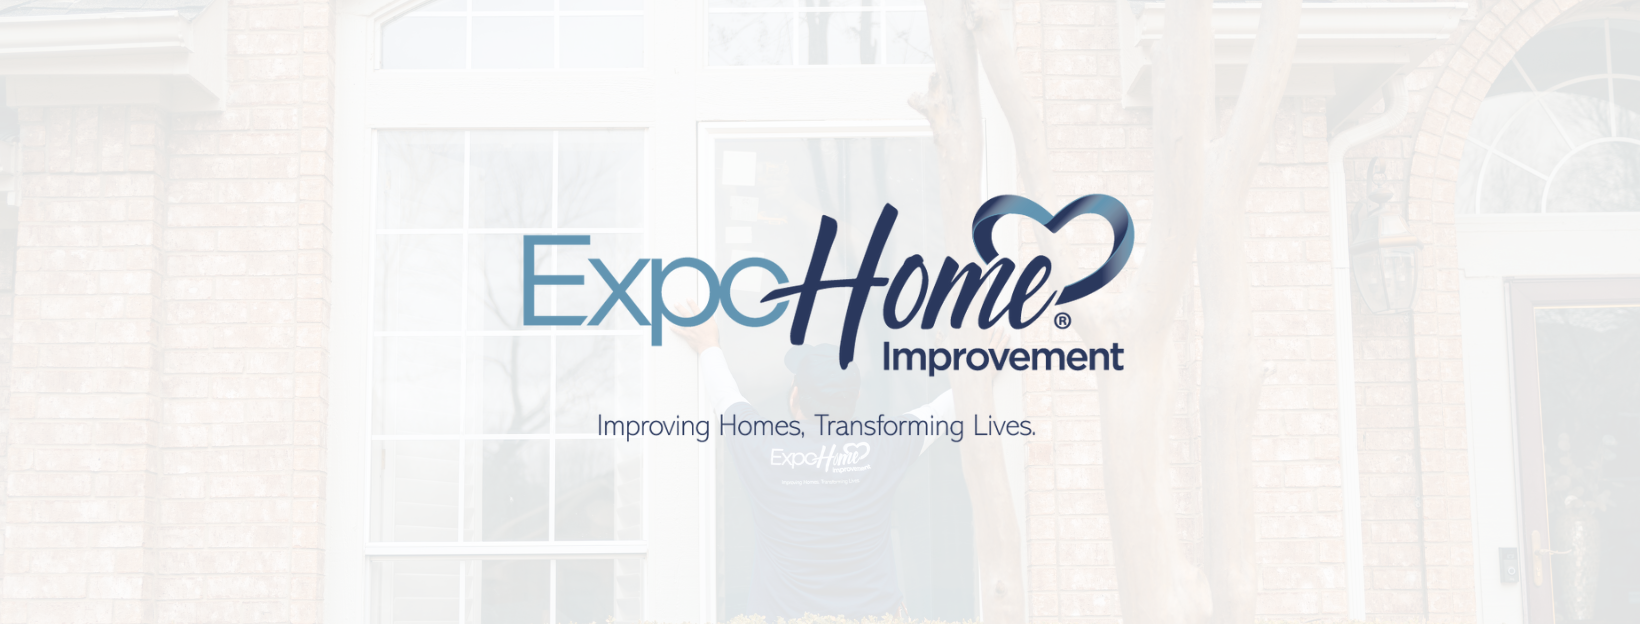 Expo Home Improvement